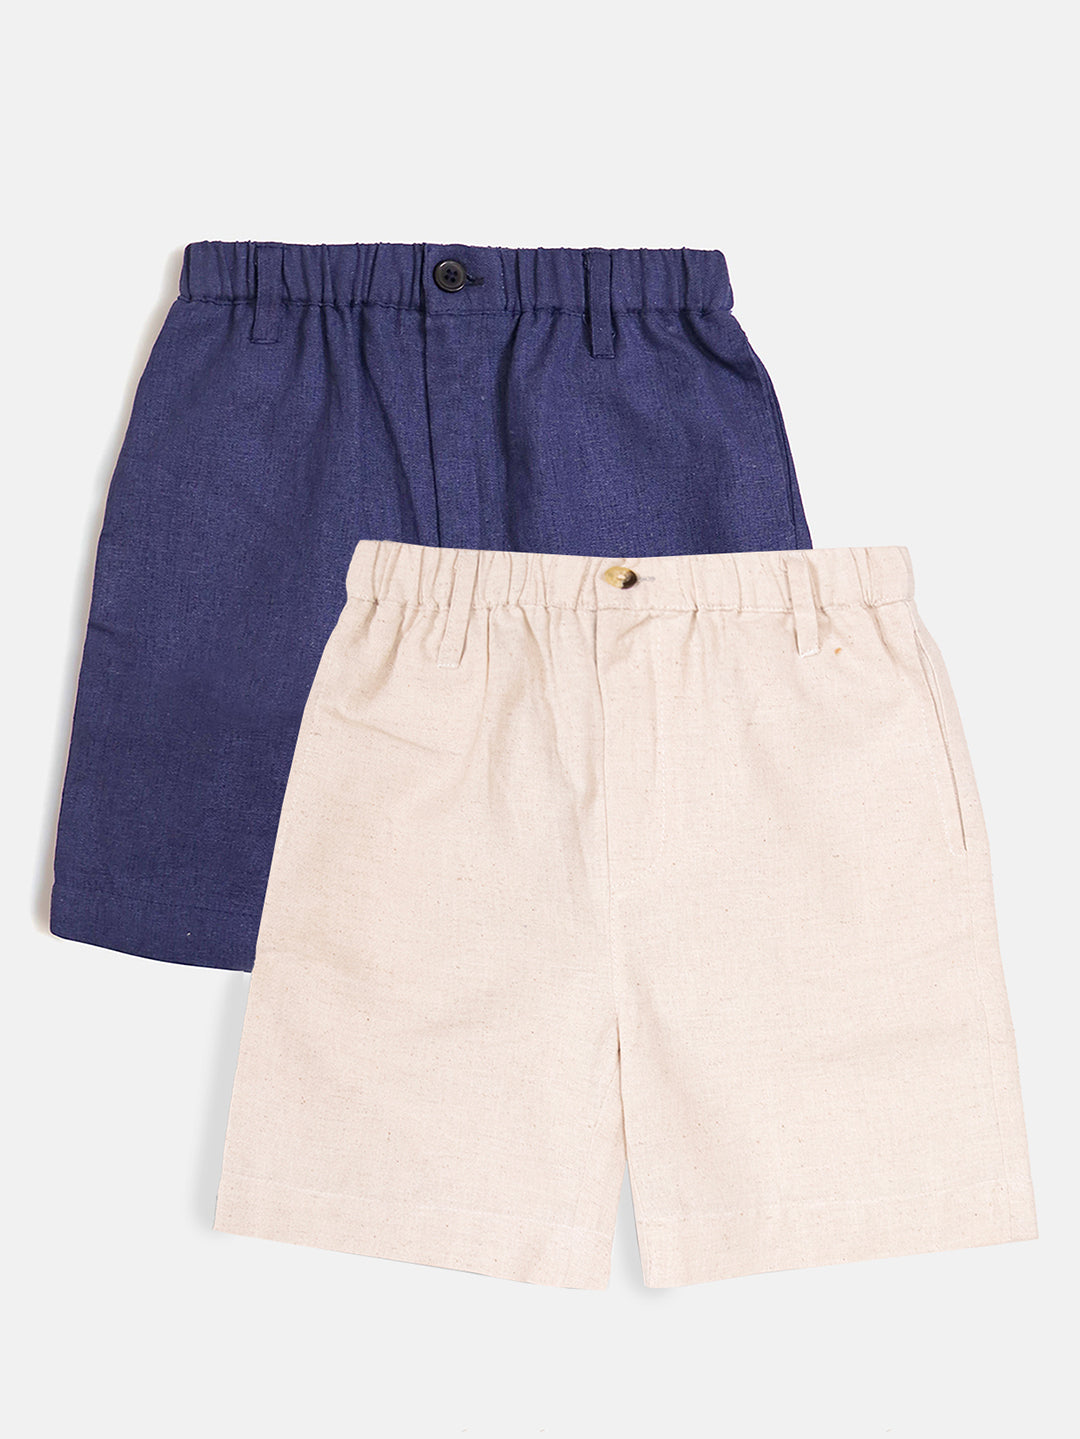 Boys Elastic Shorts Combo-Navy Blue and Cream